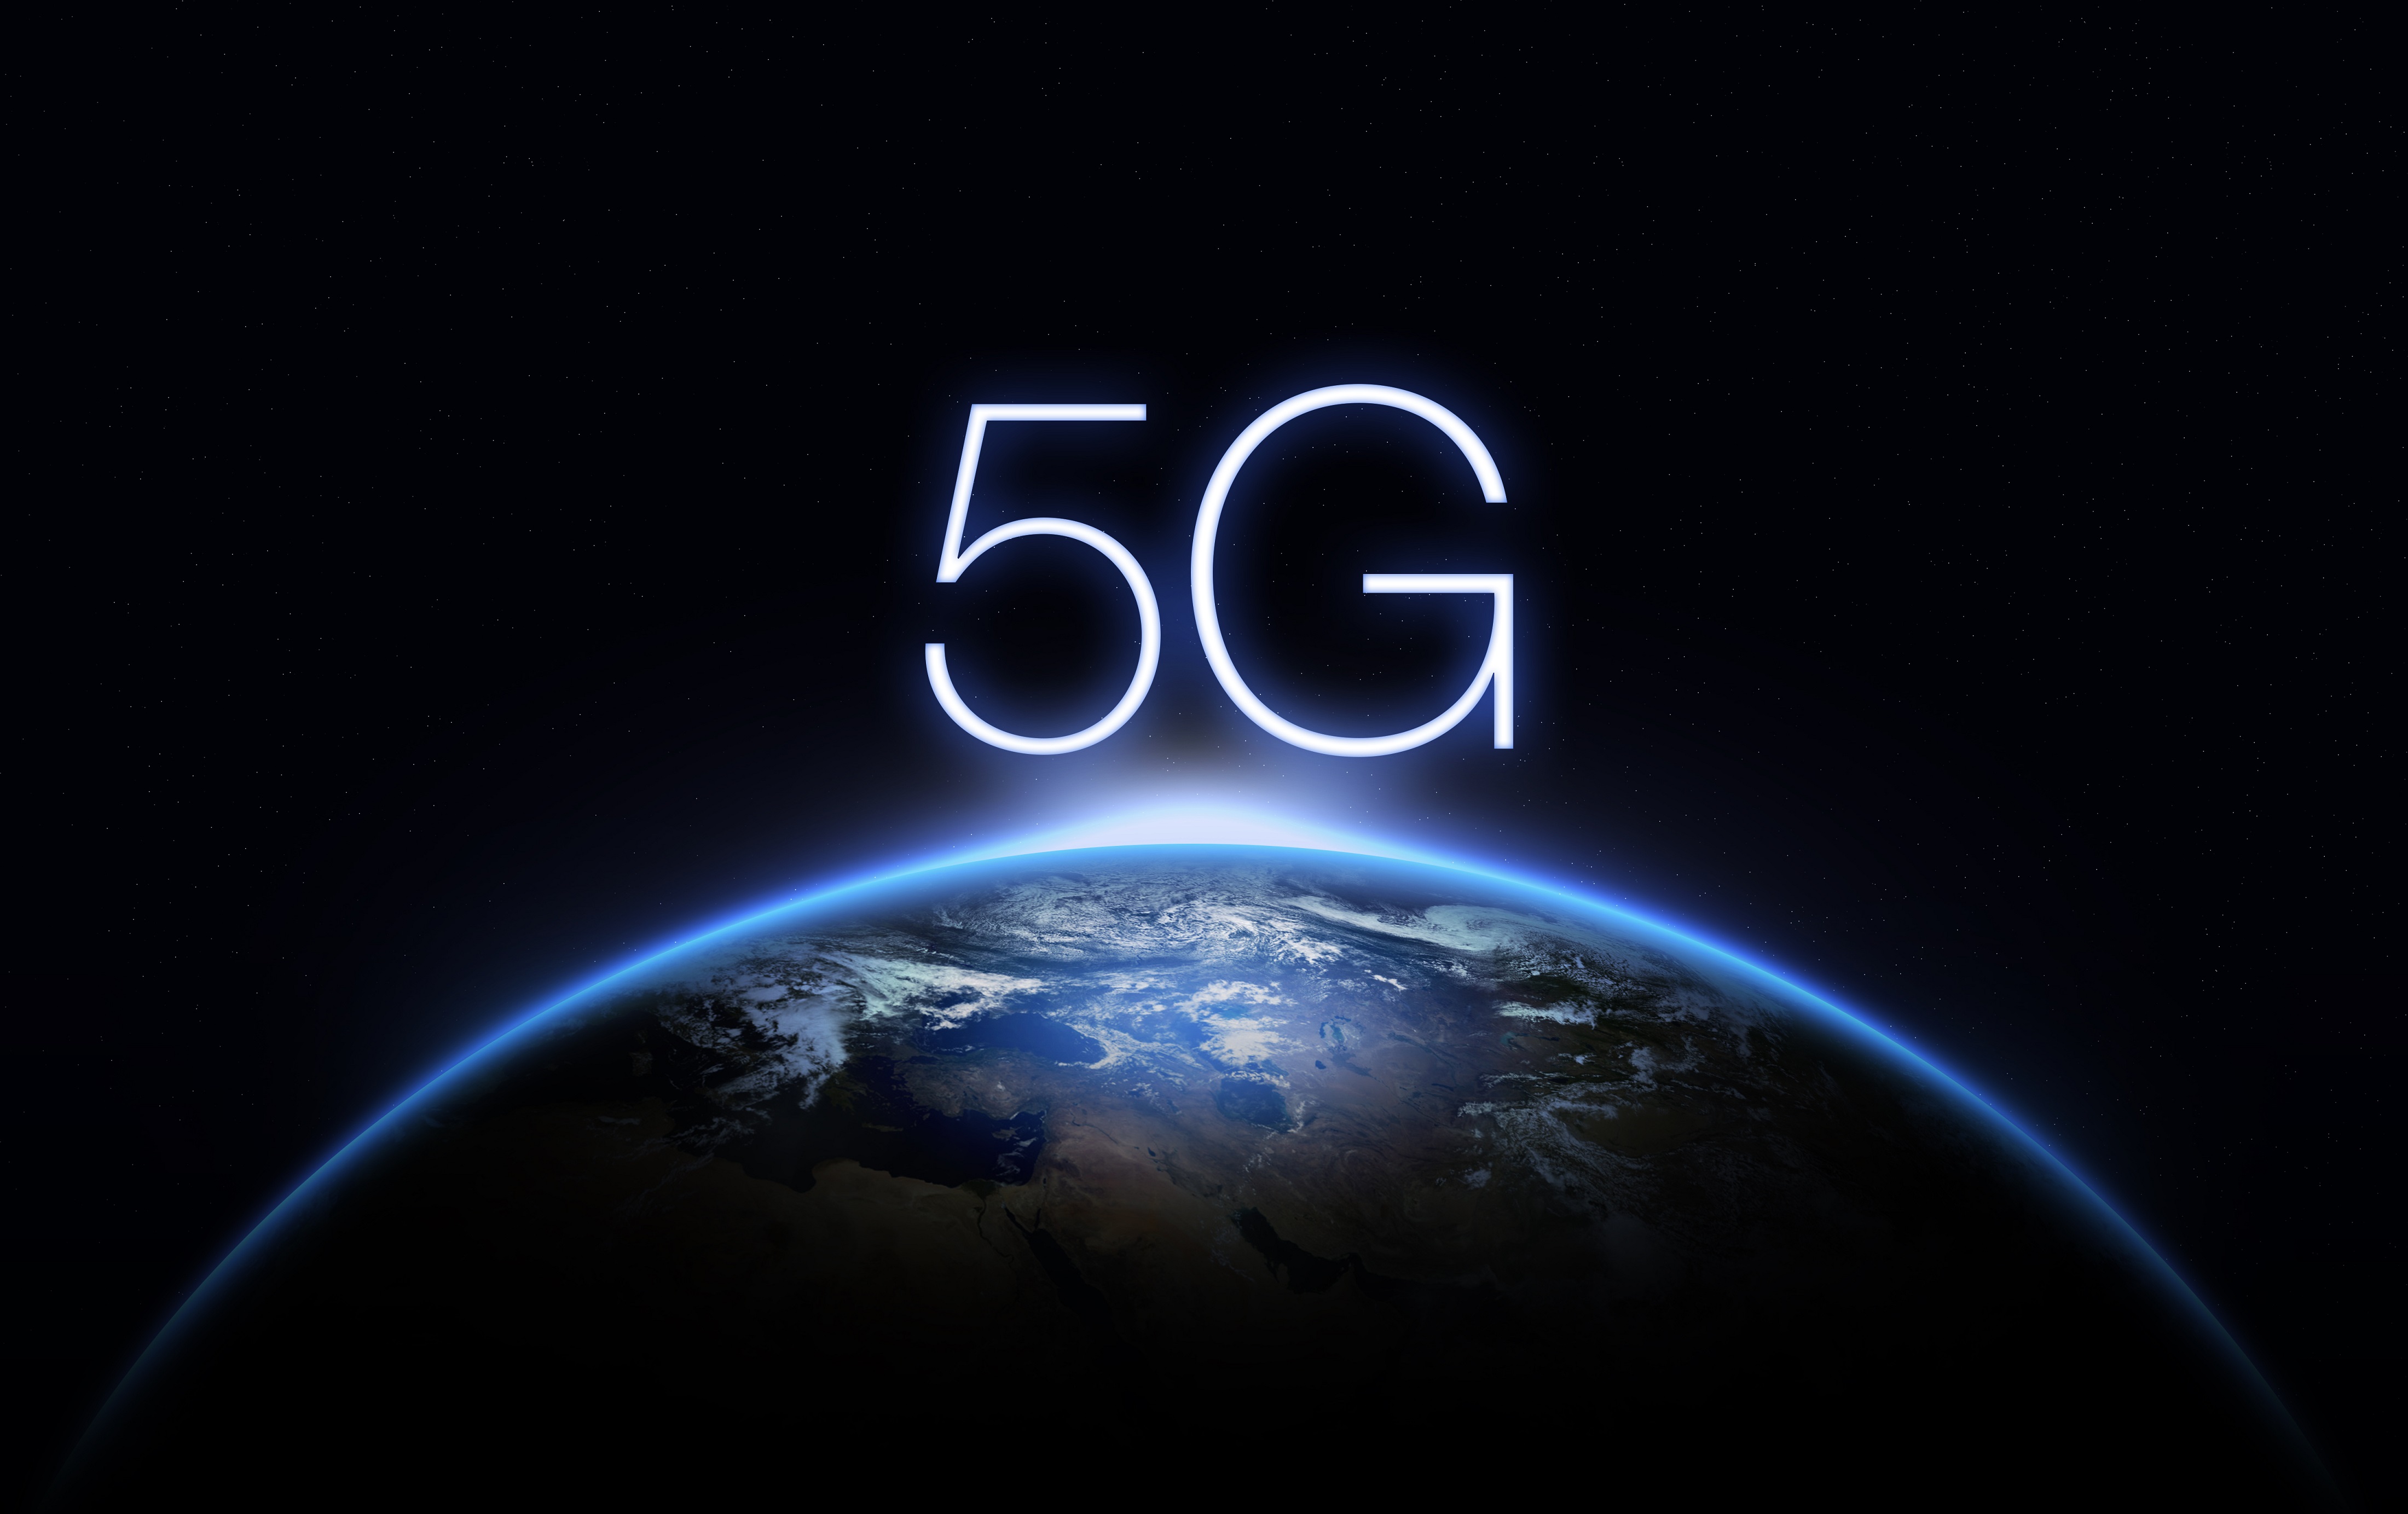 Tiltakozik Kína az ellen, hogy Kanada a Huawei és a ZTE kizárását tervezi az 5G hálózatokból